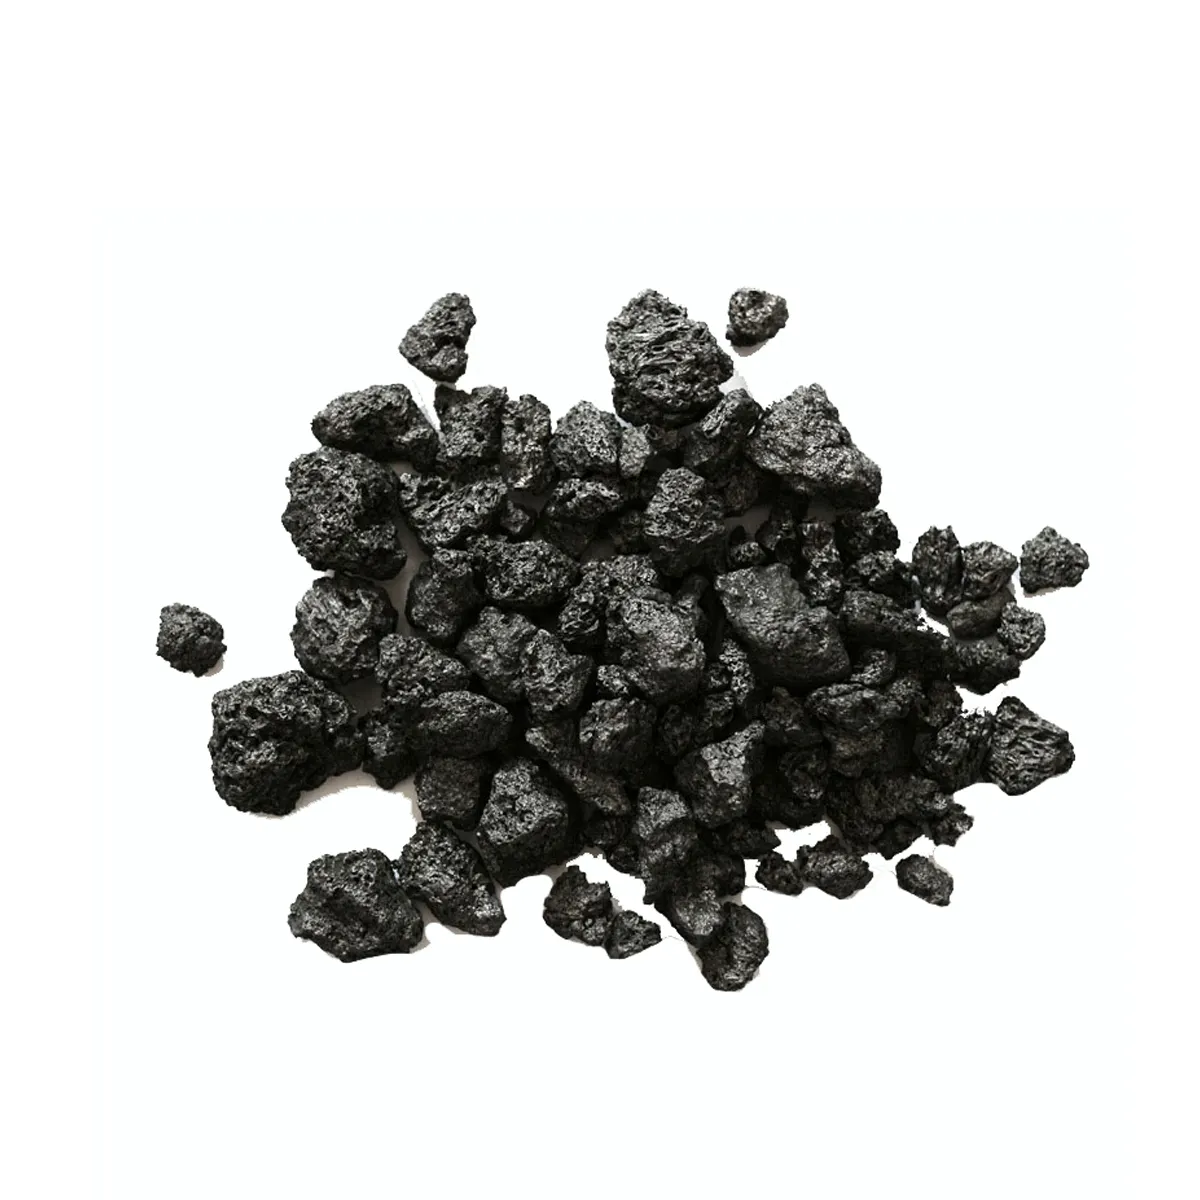 Перебуризатор углерода CAC CPC GPC кальцинированный антрацитовый уголь кальцинированный/графитовый нефтяной кокс